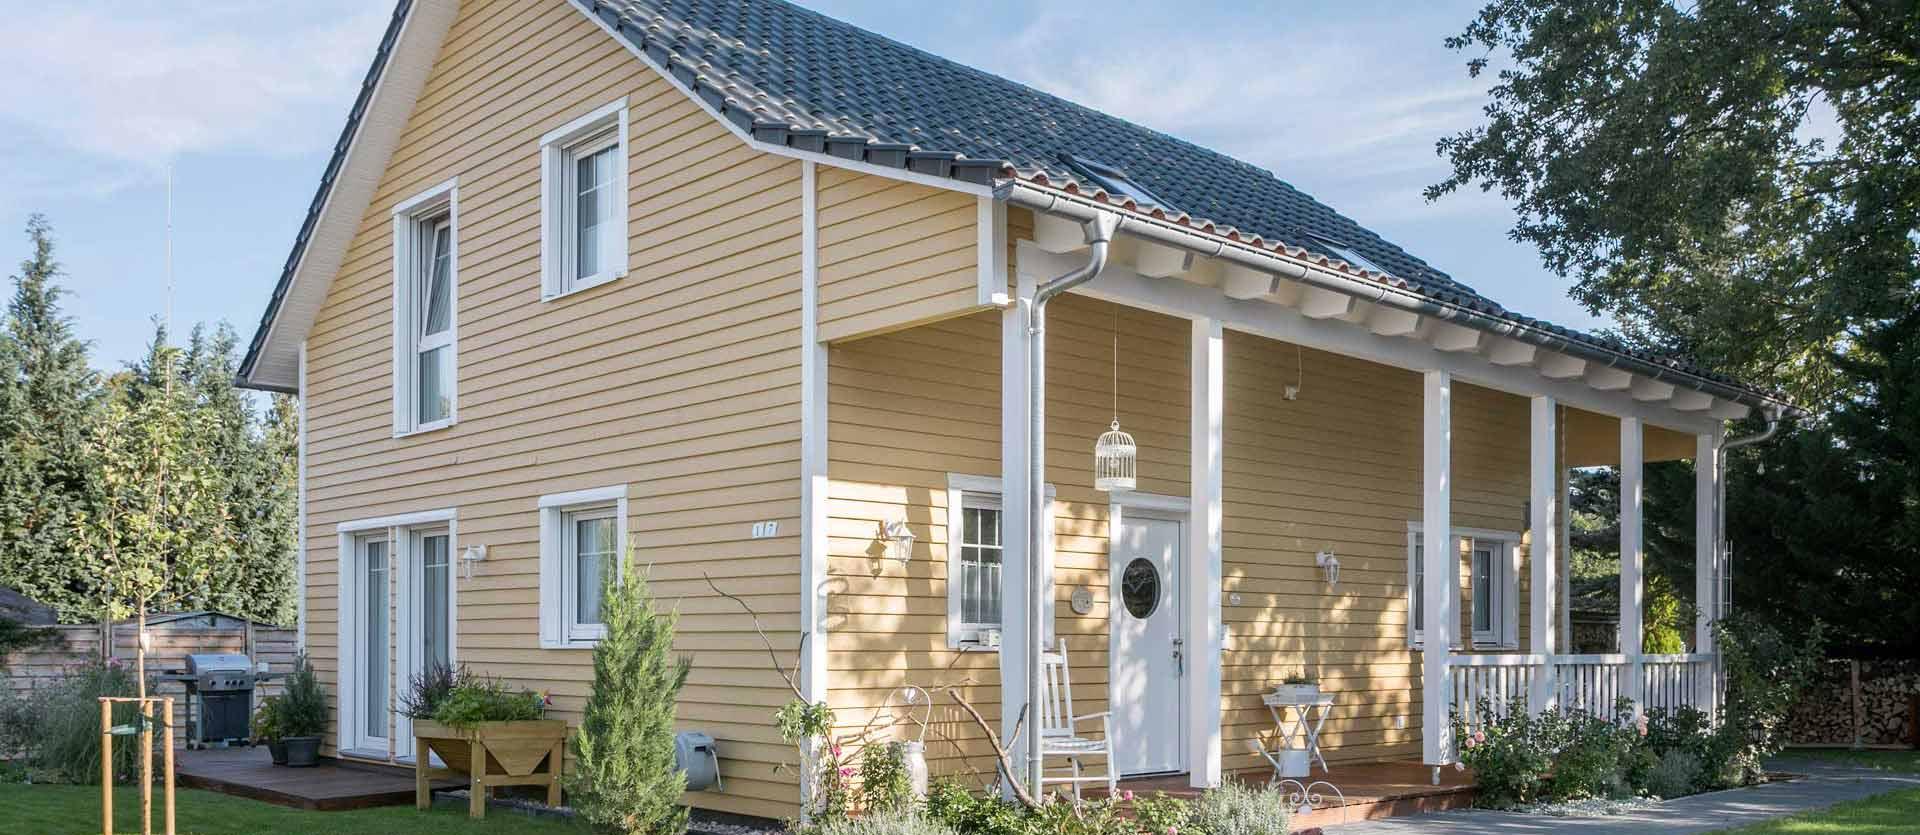 Haus im Schwedenstil